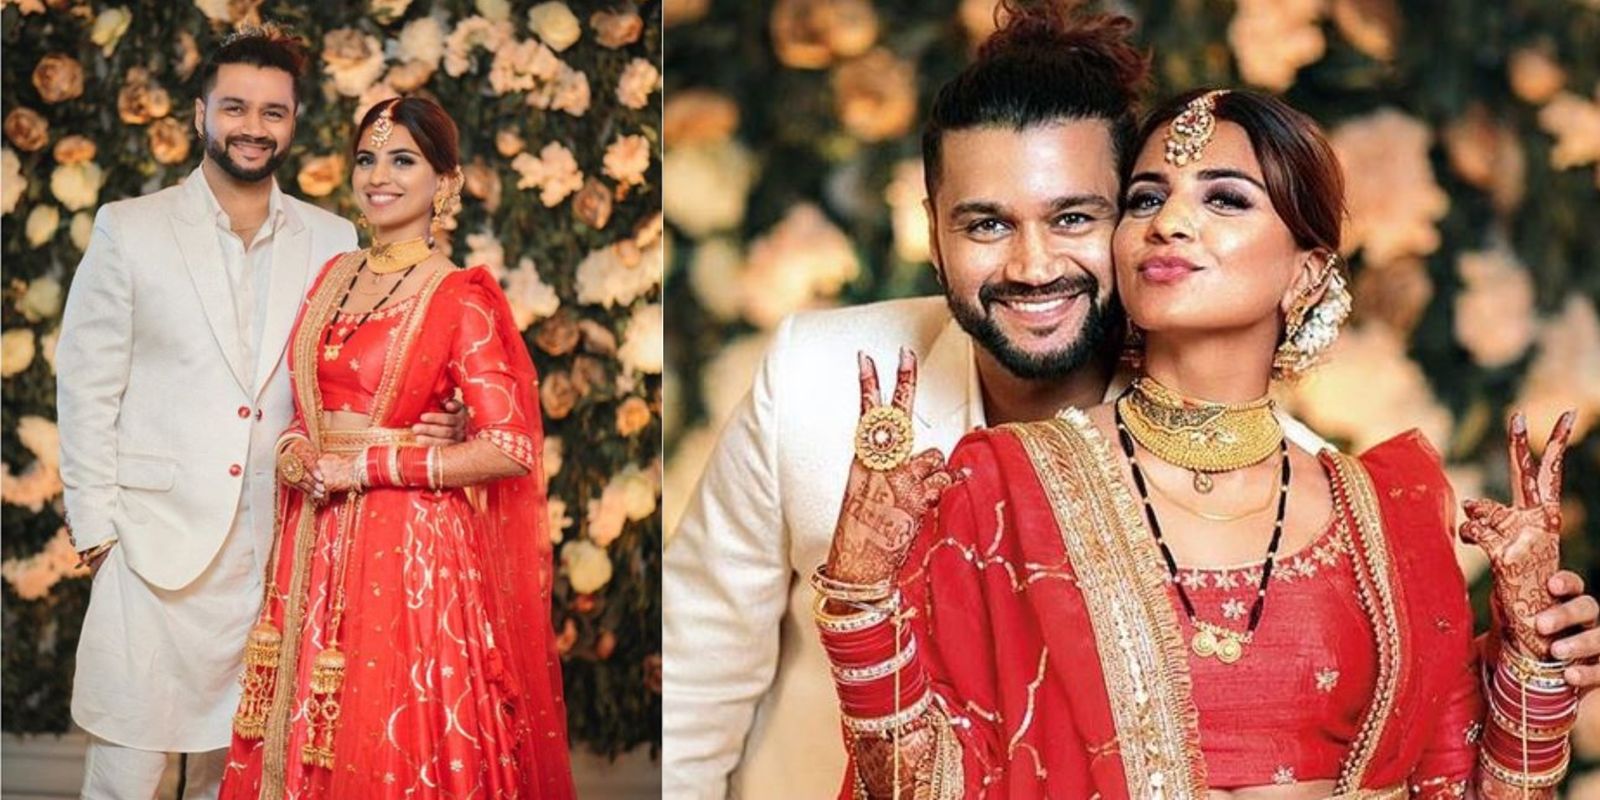 Mujhse Shaadi Karoge's Balraj Syal Opts For A Hush-Hush Wedding With Singer Deepti Tuli, Plans To Host A Grand Reception